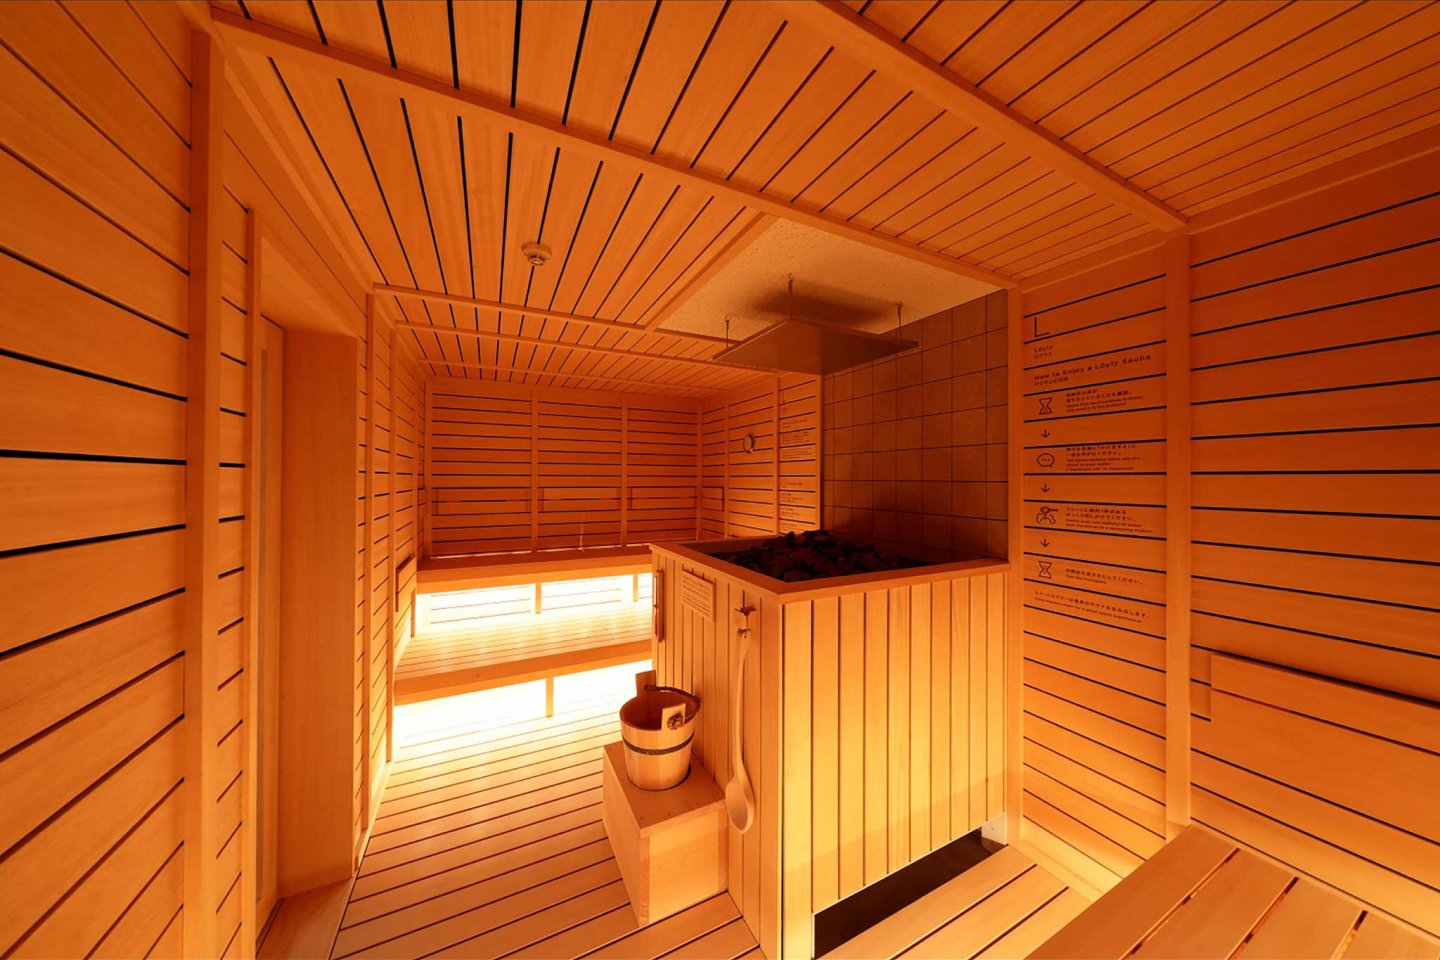 In the sauna